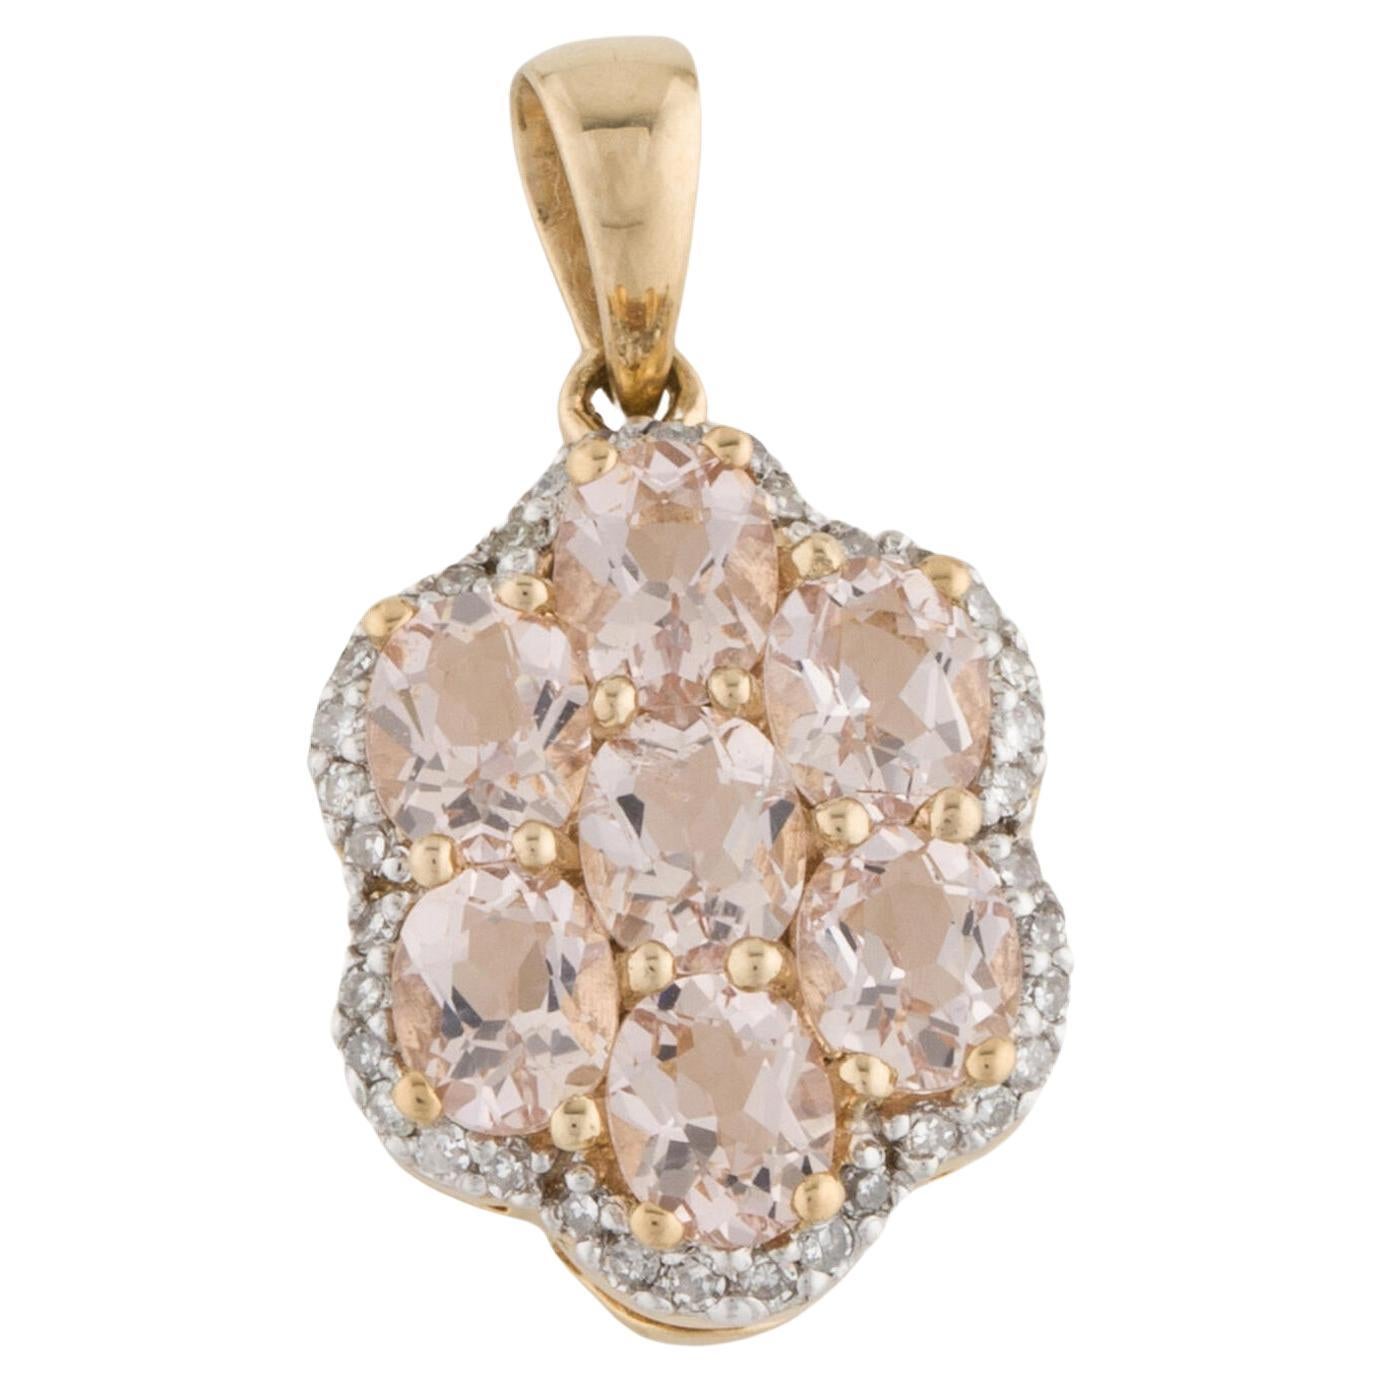 Exquisite 14K Diamond & Morganite Pendant - Elegant Gemstone Statement Piece For Sale